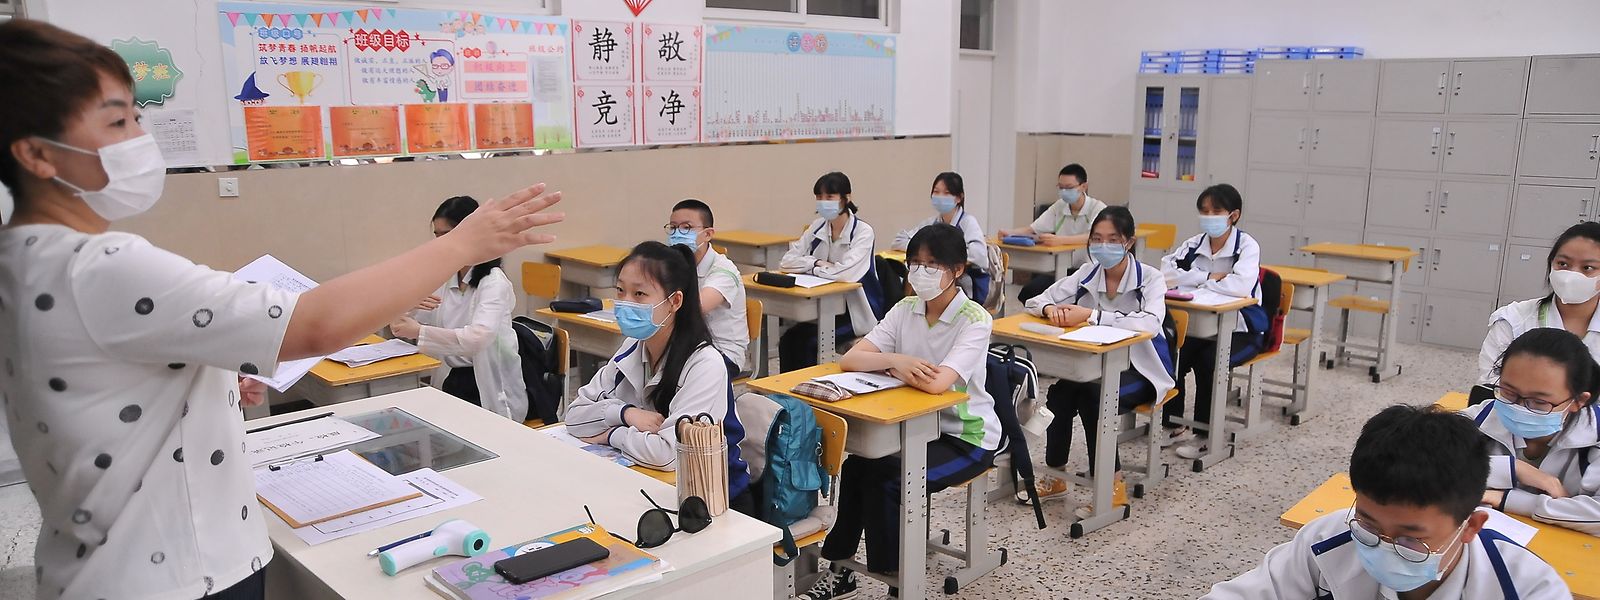 In Peking fing die Schule am 1. Juni wieder an. Sowohl das Lehrpersonal als auch die Schüler müssen strenge Regeln befolgen.